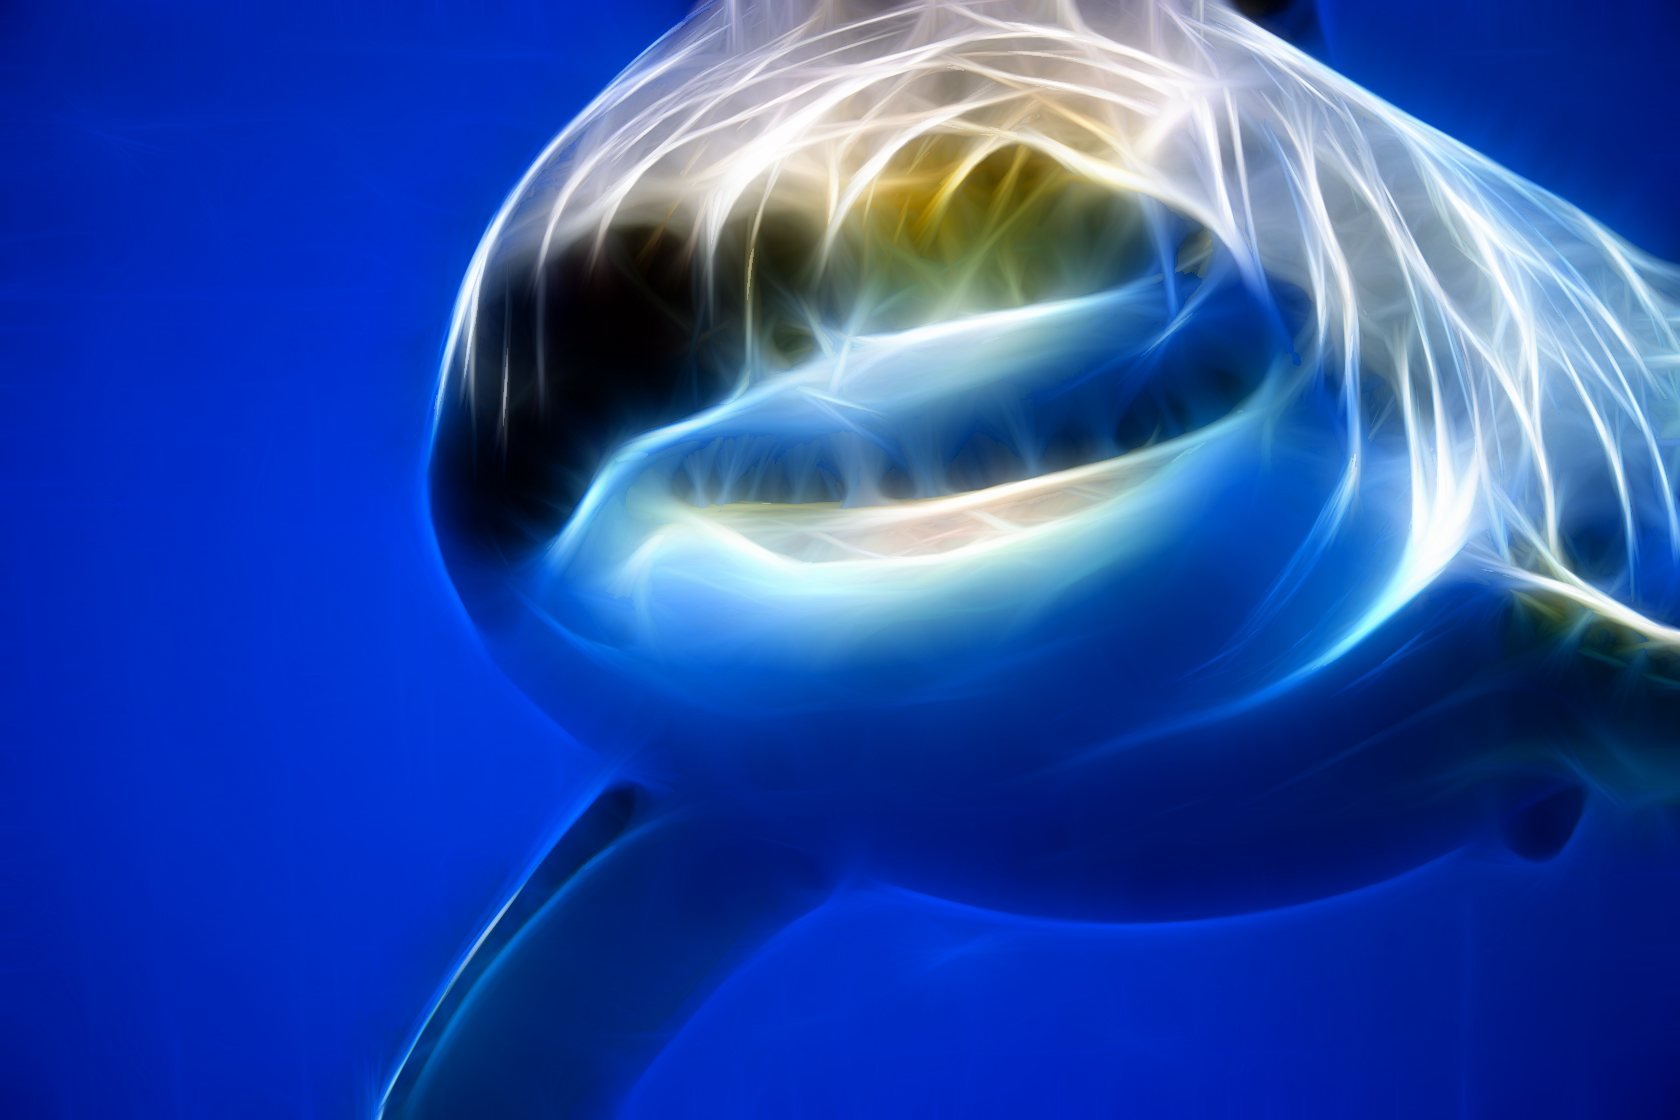 Descarga gratuita de fondo de pantalla para móvil de Tiburones, Tiburón, Animales.